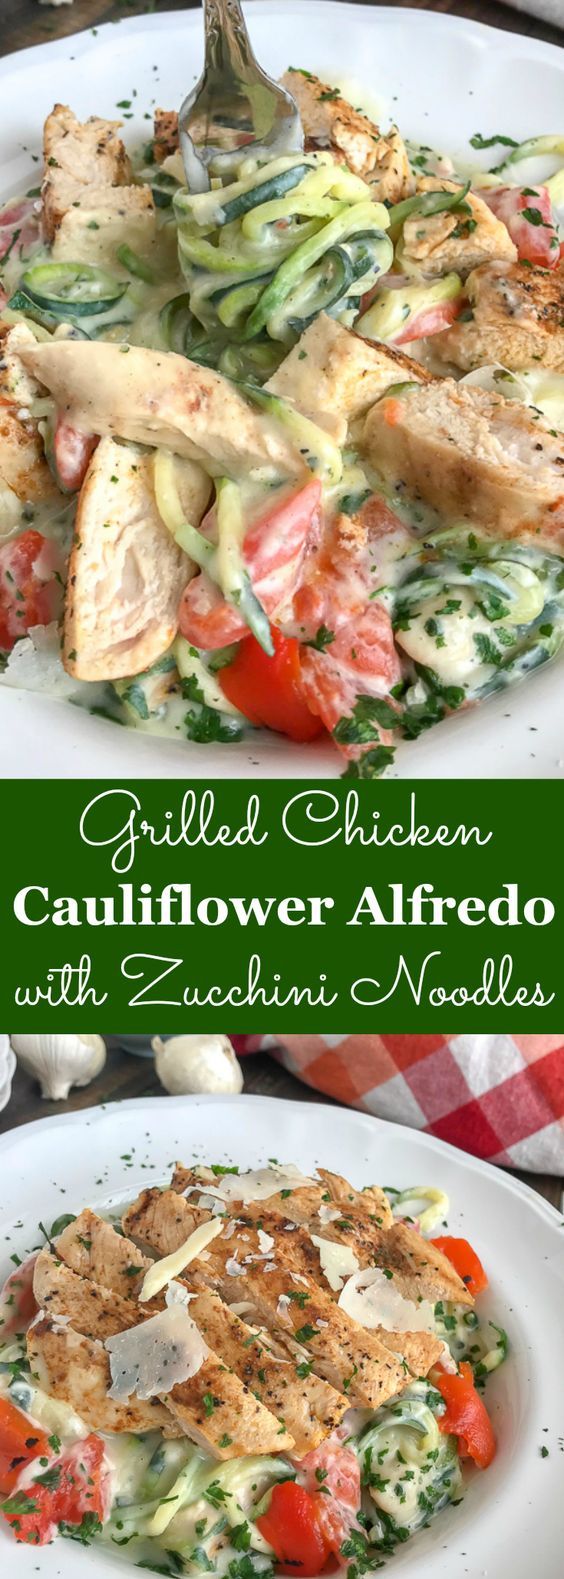 Grilled-Chicken-Cauliflower-Alfredo-with-Zucchini-Noodles